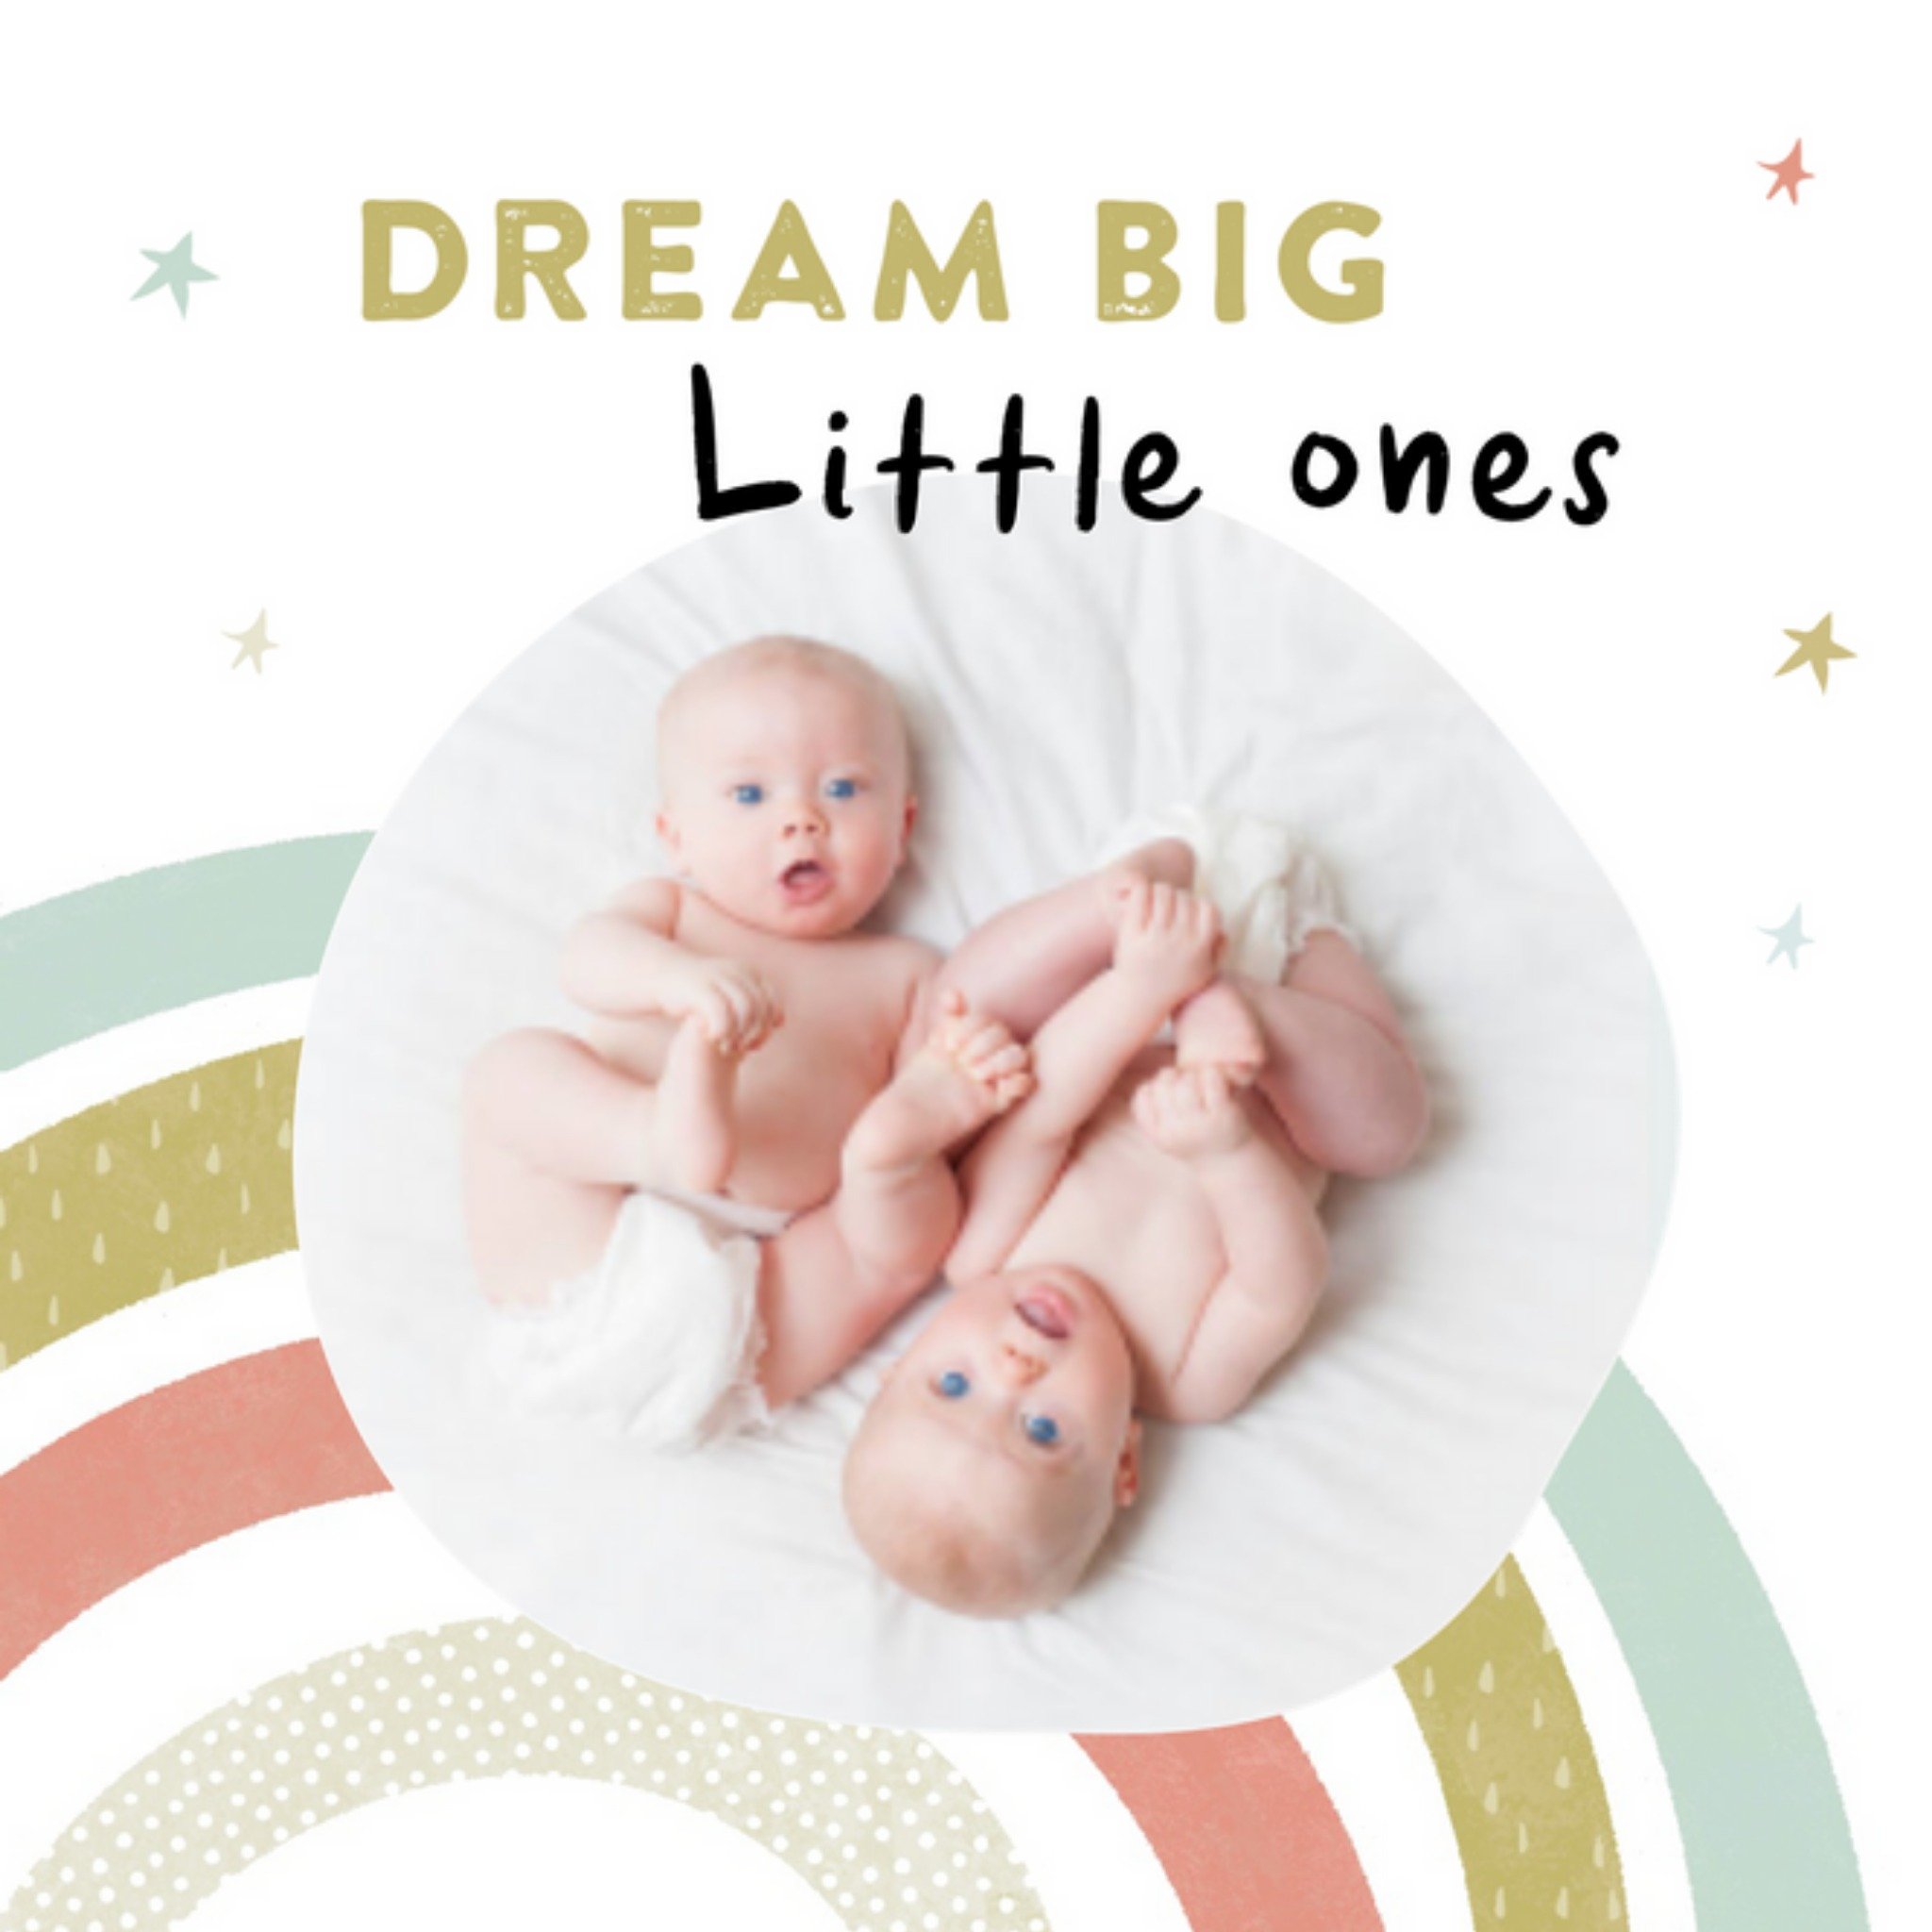 Geboortekaart - Dream big little ones